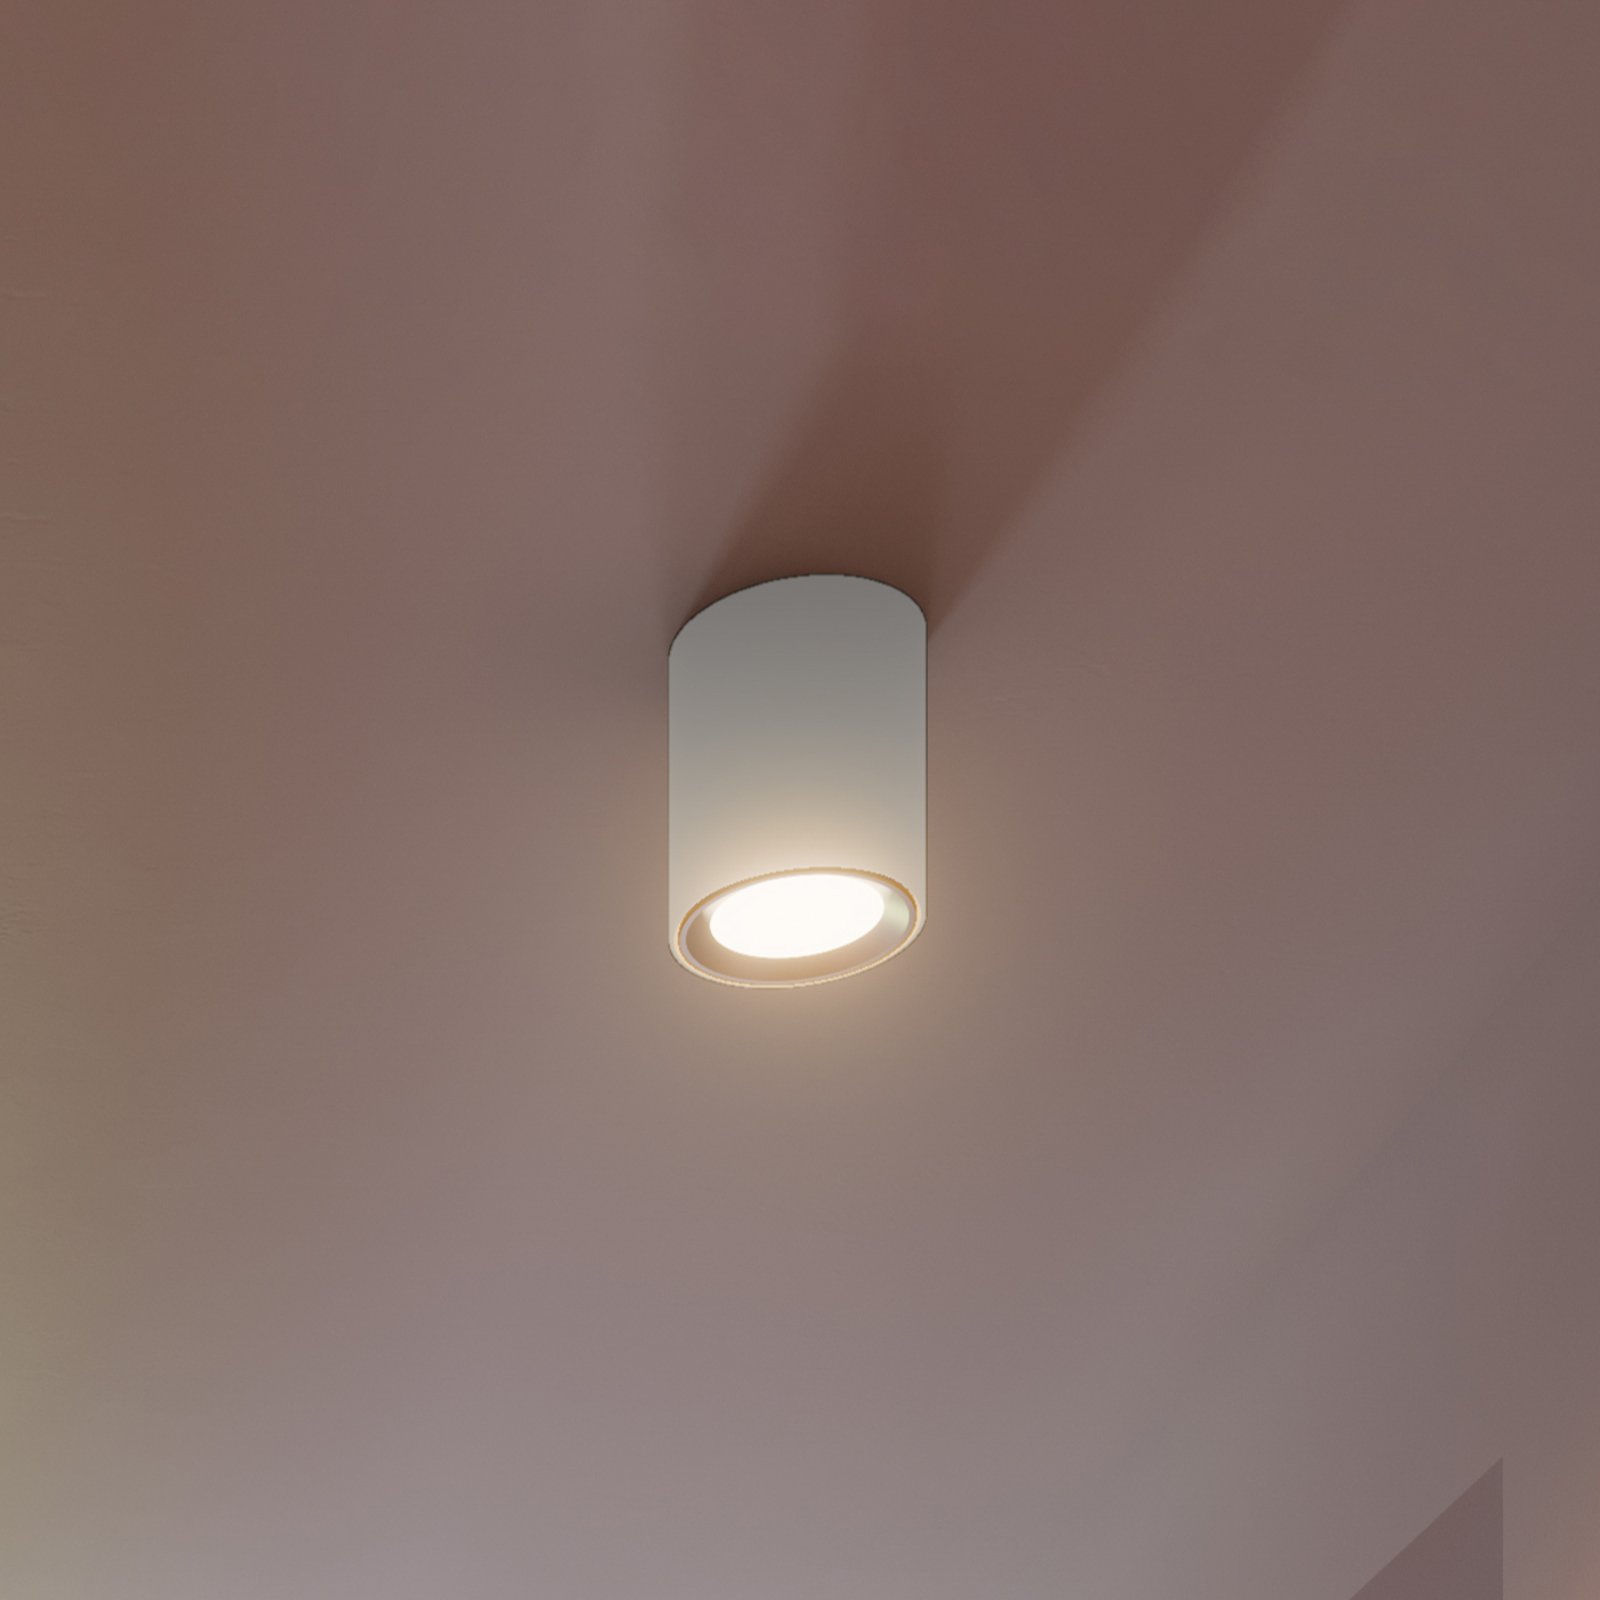 Foco techo LED Landon Smart, blanco, alto 14 cm